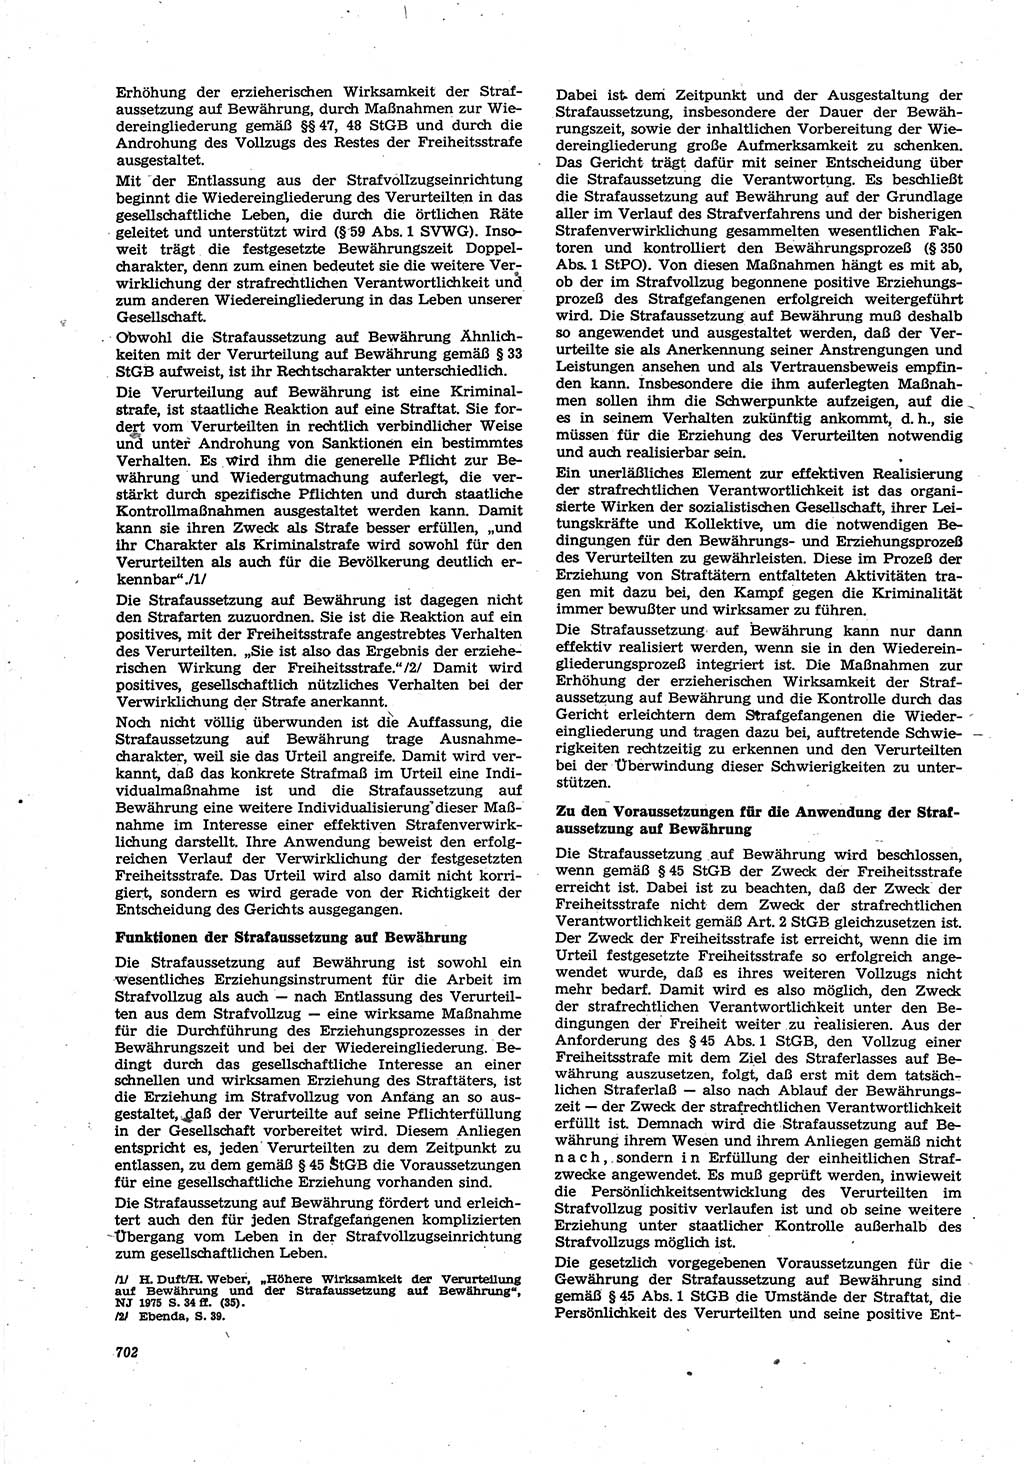 Neue Justiz (NJ), Zeitschrift für Recht und Rechtswissenschaft [Deutsche Demokratische Republik (DDR)], 30. Jahrgang 1976, Seite 702 (NJ DDR 1976, S. 702)